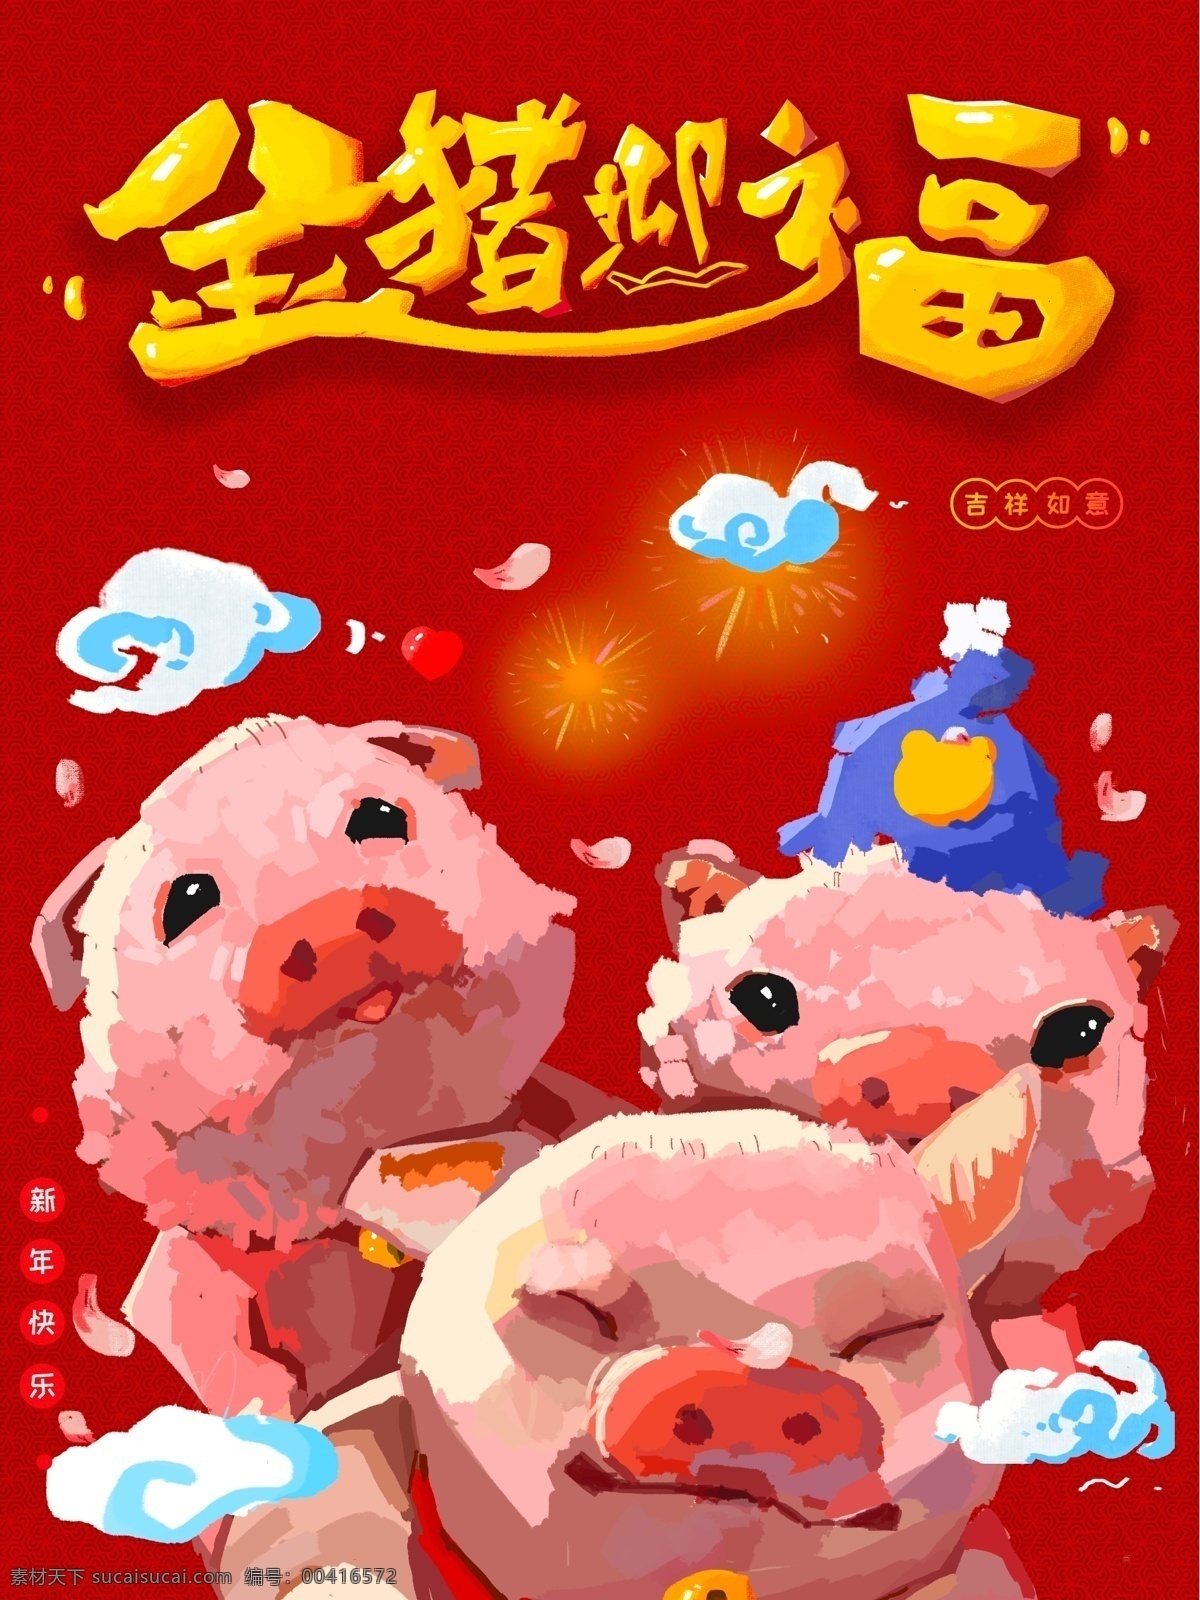 原创 手绘 2019 猪年 海报 猪 插画 祝福 新年 朋友圈